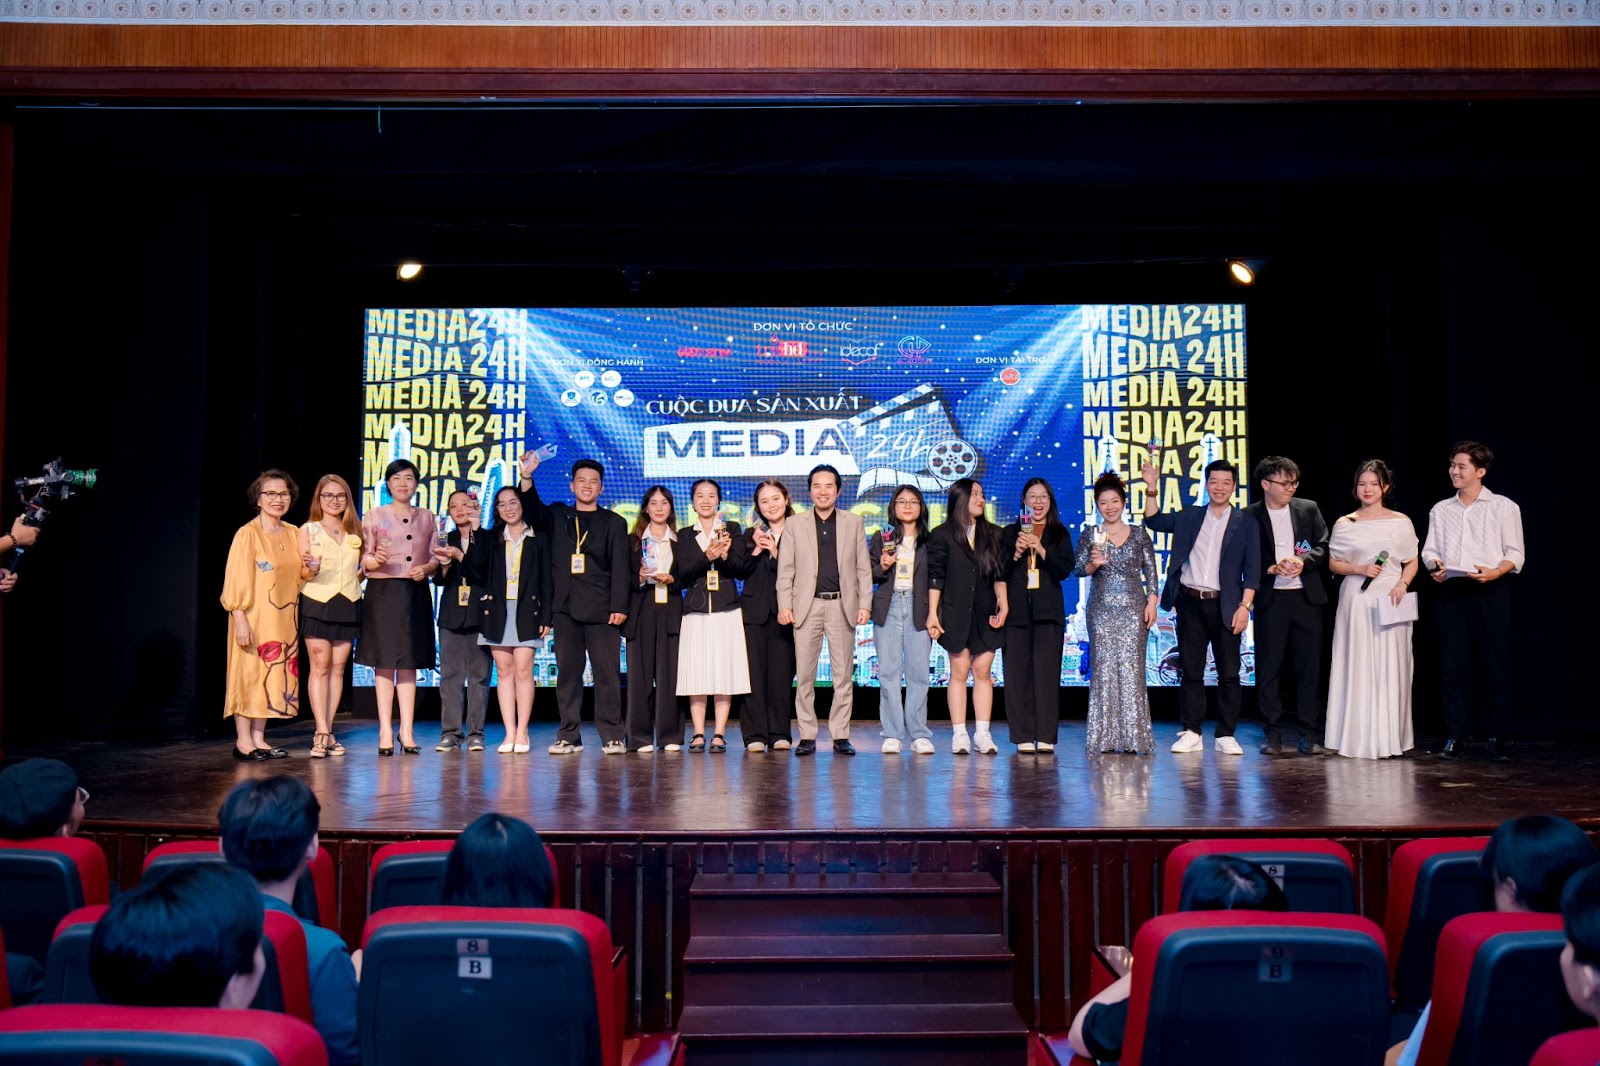 Cuộc đua Sản xuất Media24h trao giải cao nhất cho bộ phim về Lịch sử